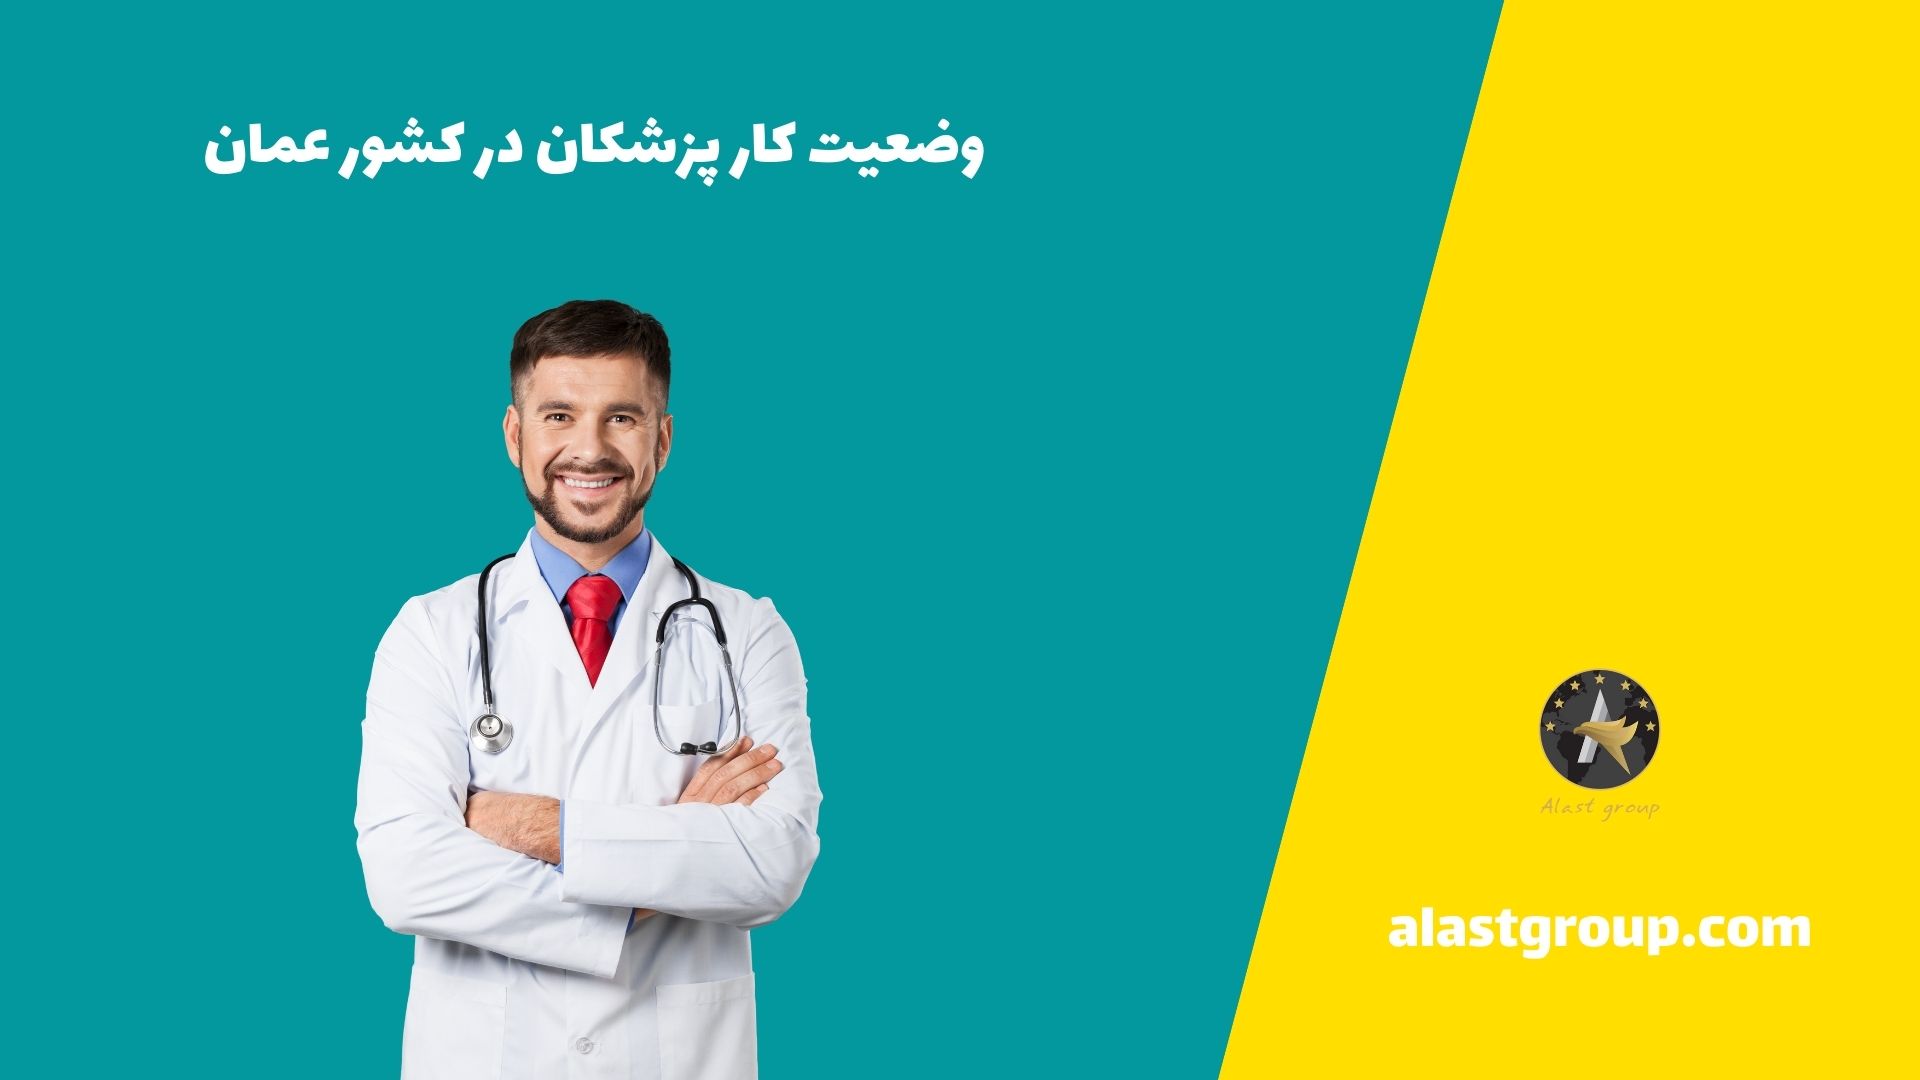 وضعیت کار پزشکان در کشور عمان